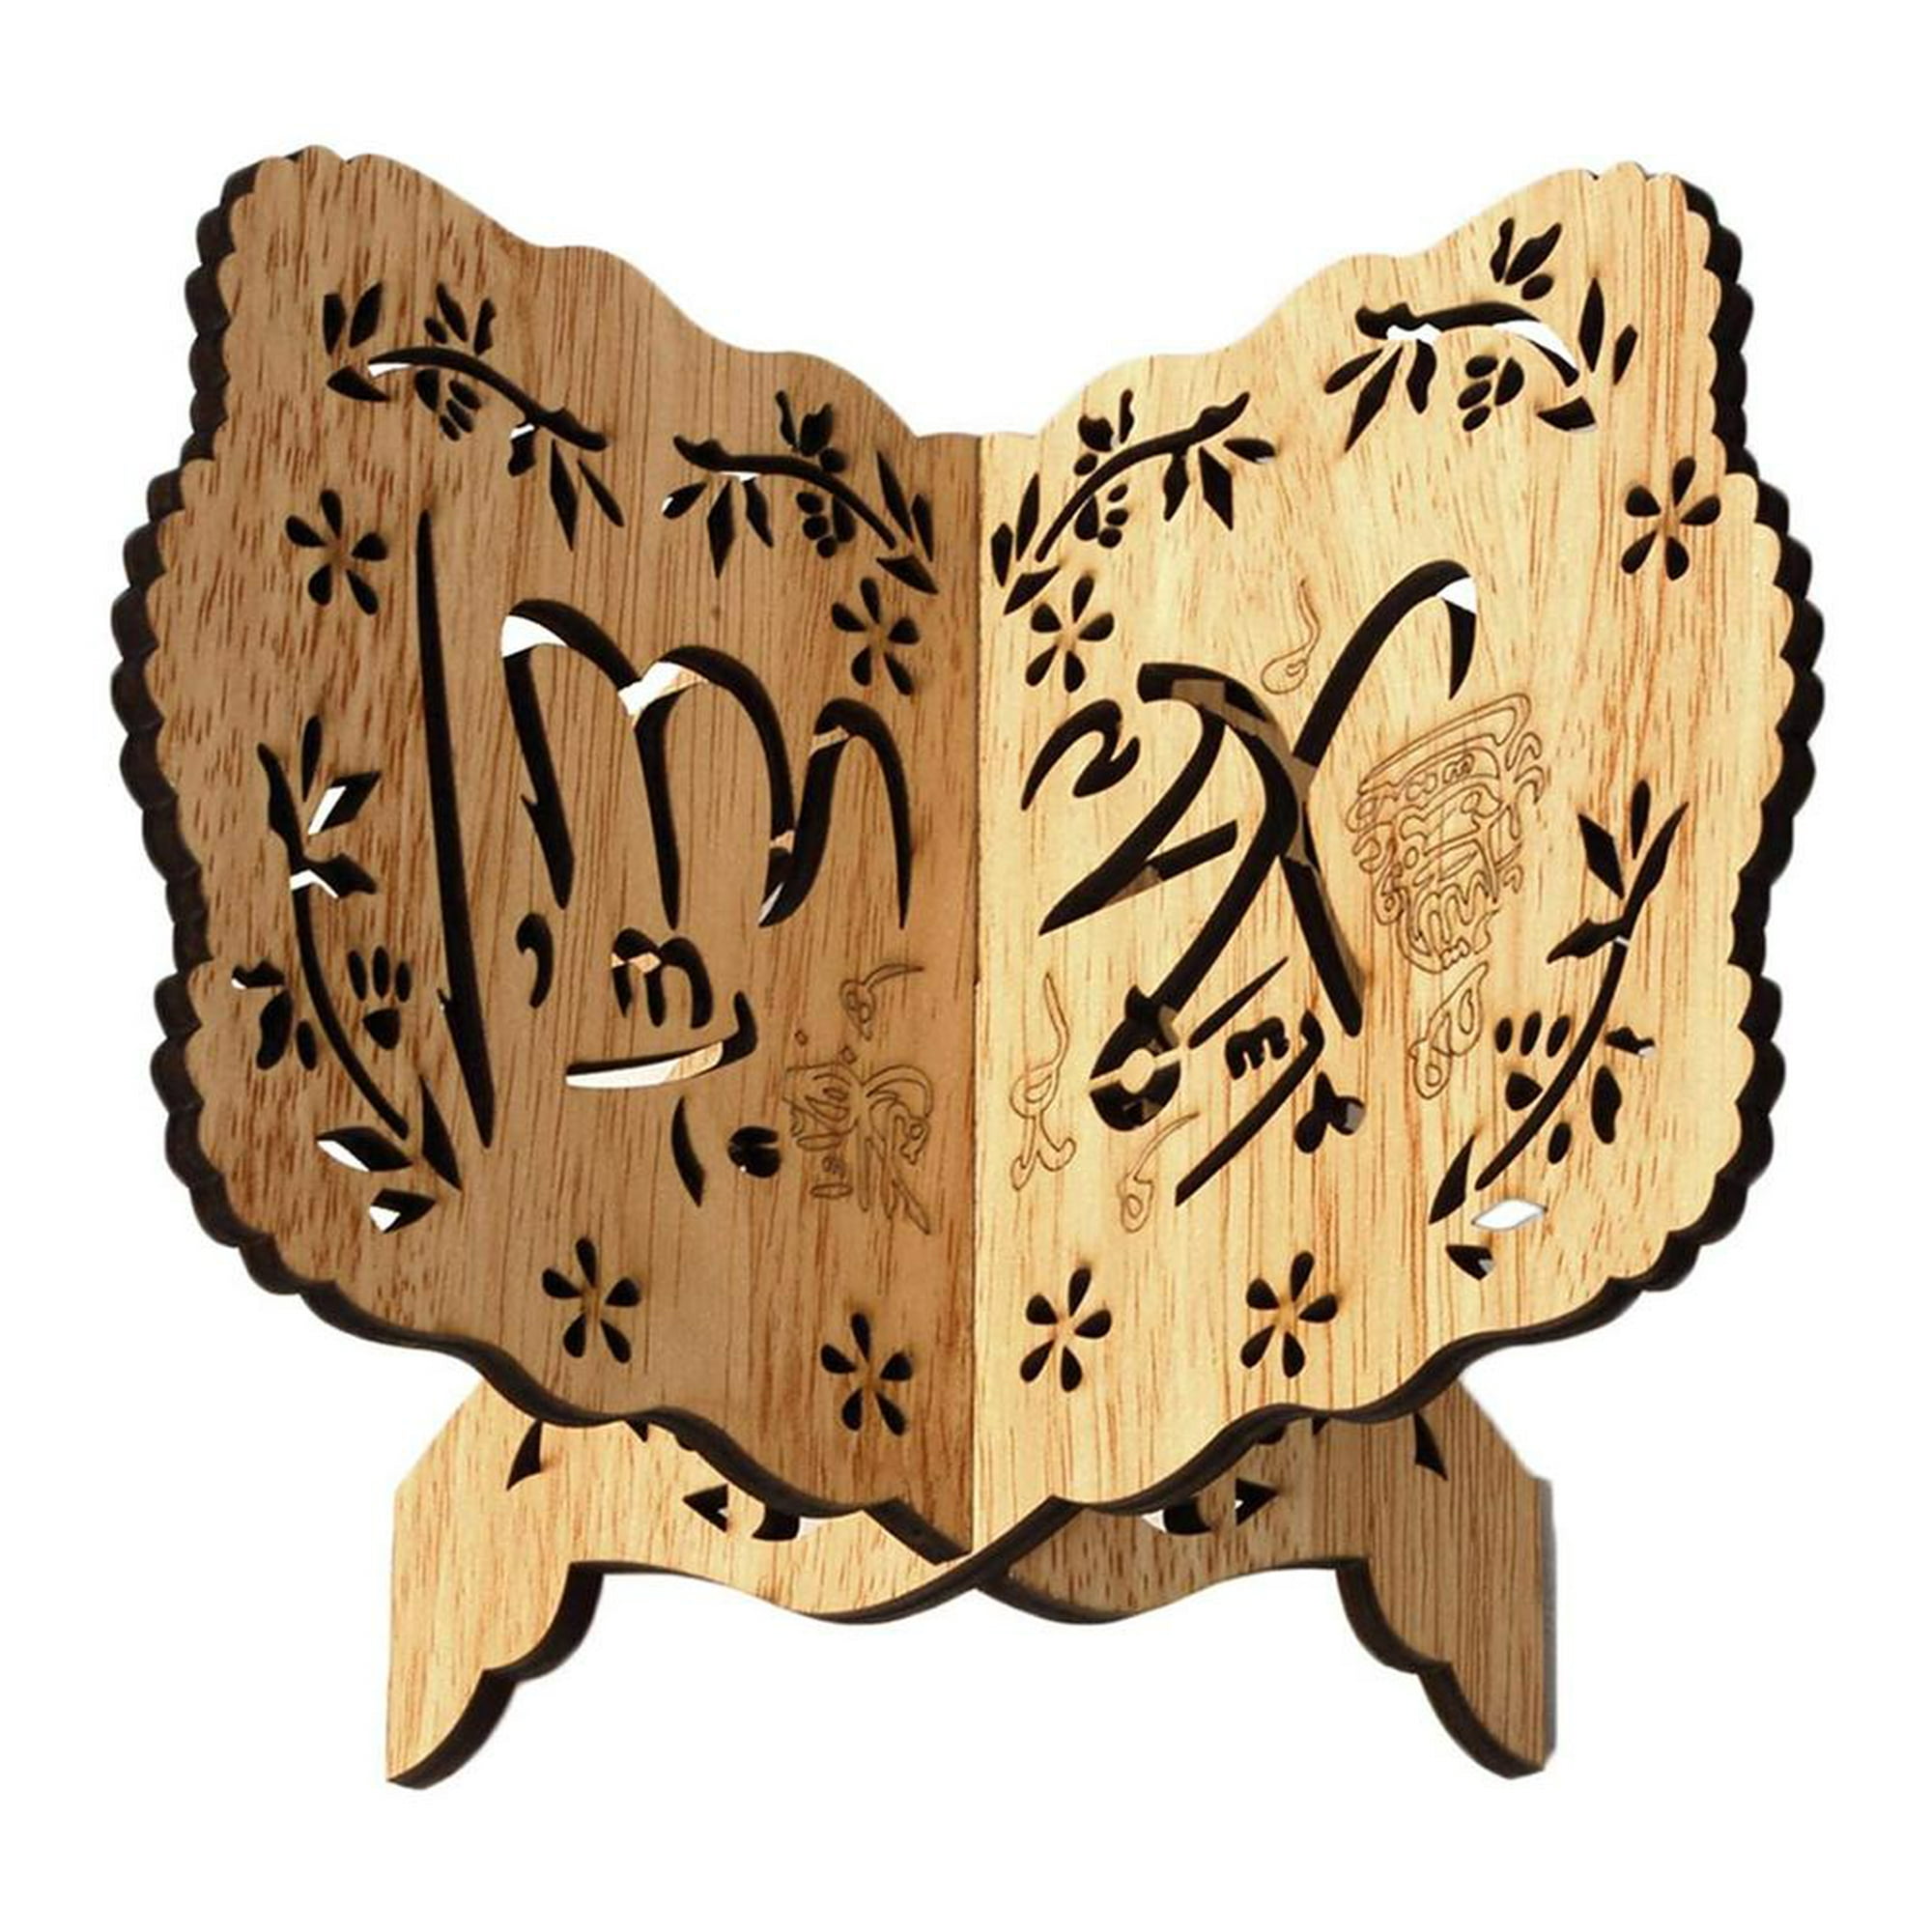 Soporte para libros plegable de madera tallada a mano con forma de Lavh,  'Cuentos de la ruta de la seda